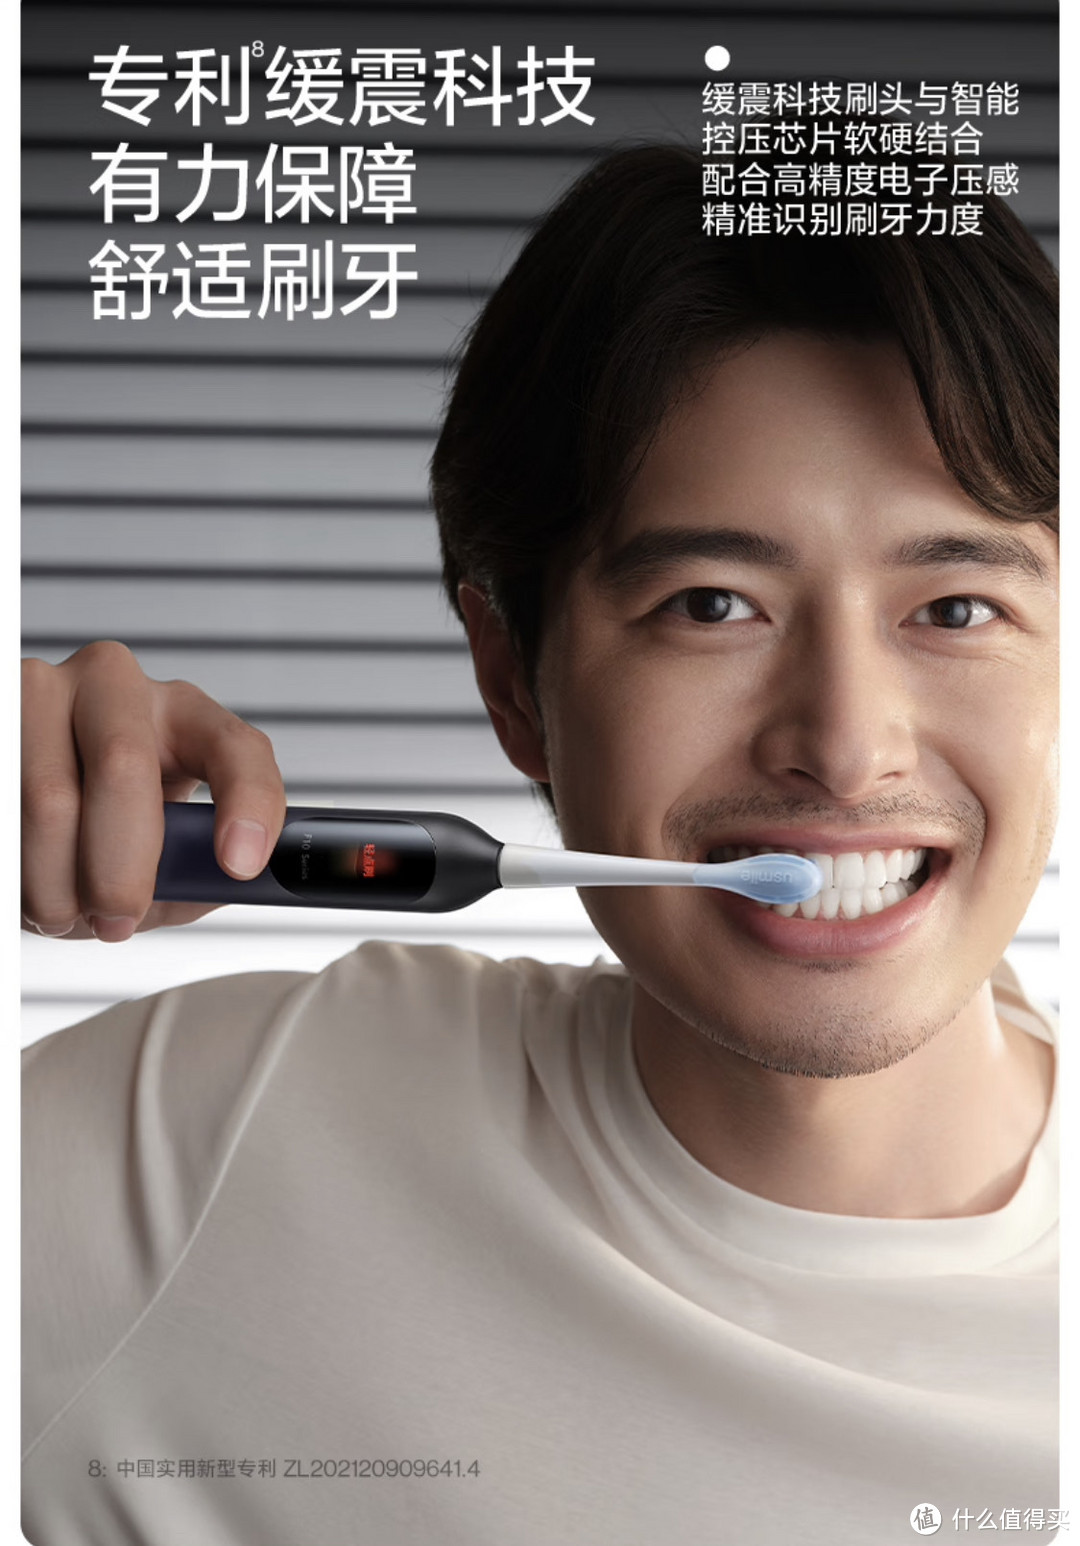 您的刷牙问题交给usmile笑容加双面屏电动数字牙刷F10 PRO。